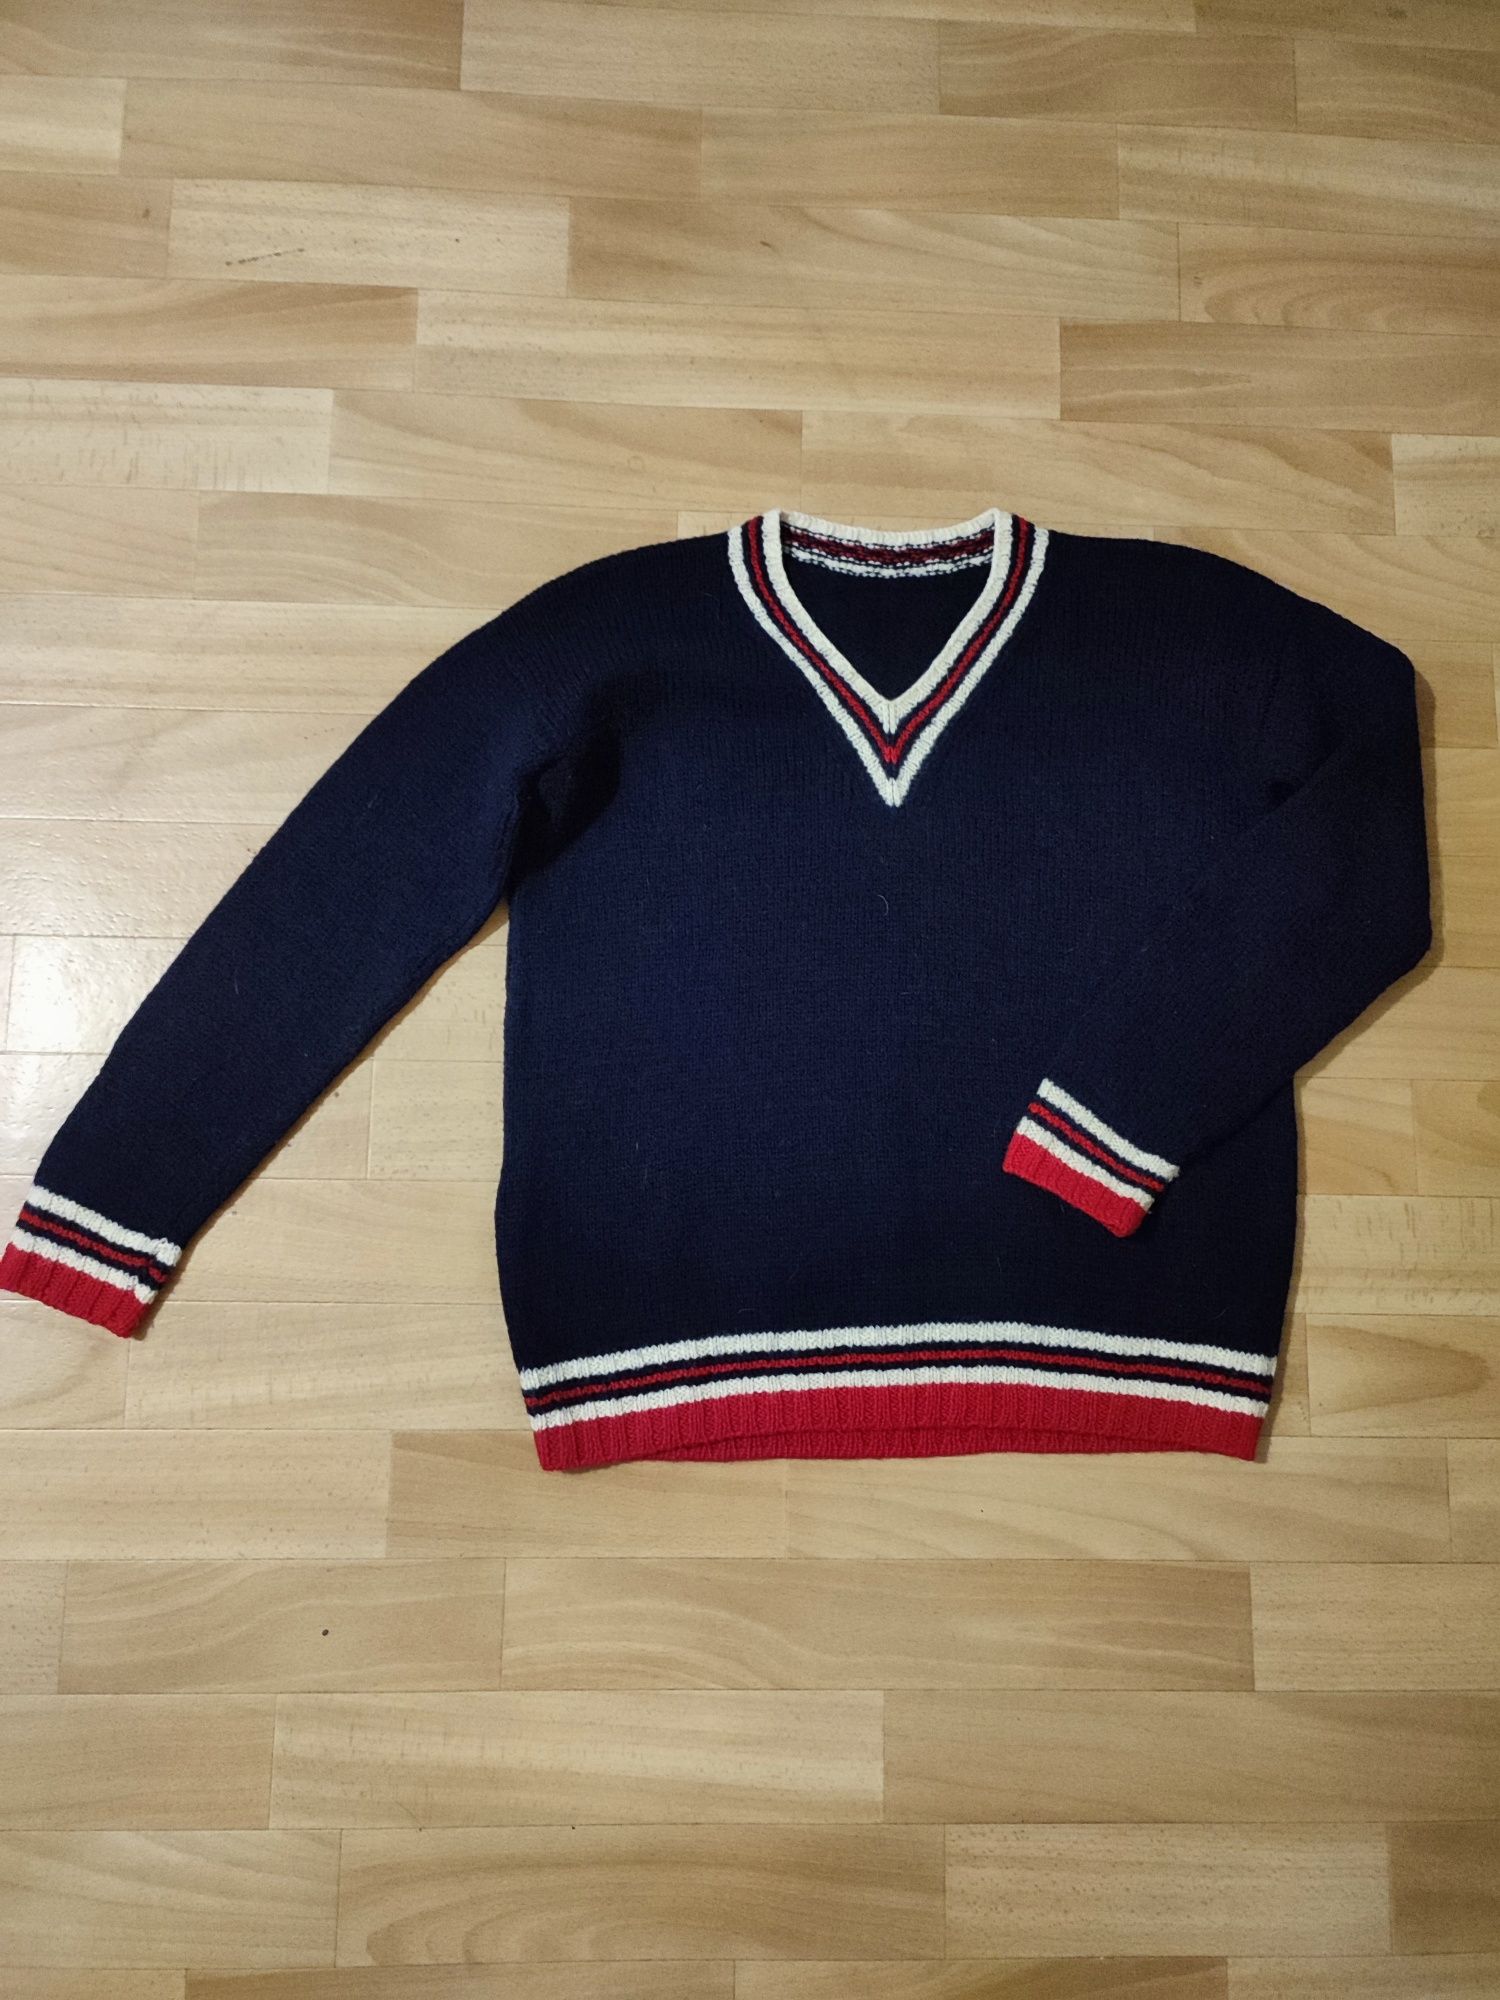 Теплая кофта свитер для мальчика подростка р 158